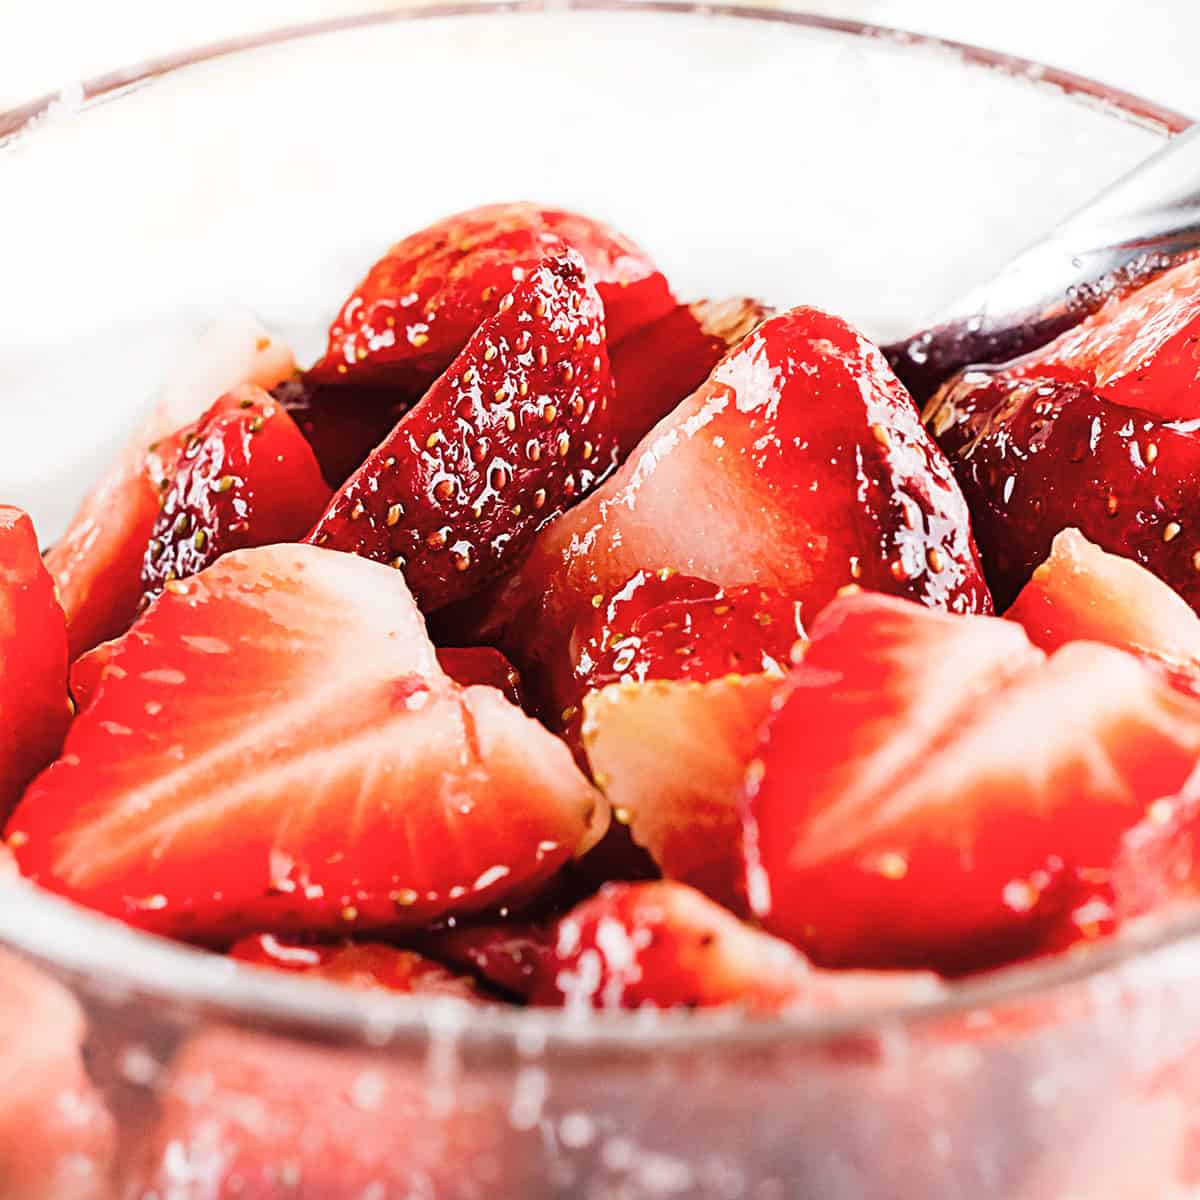 Macerated Strawberries with Sugar - Erren's Kitchen